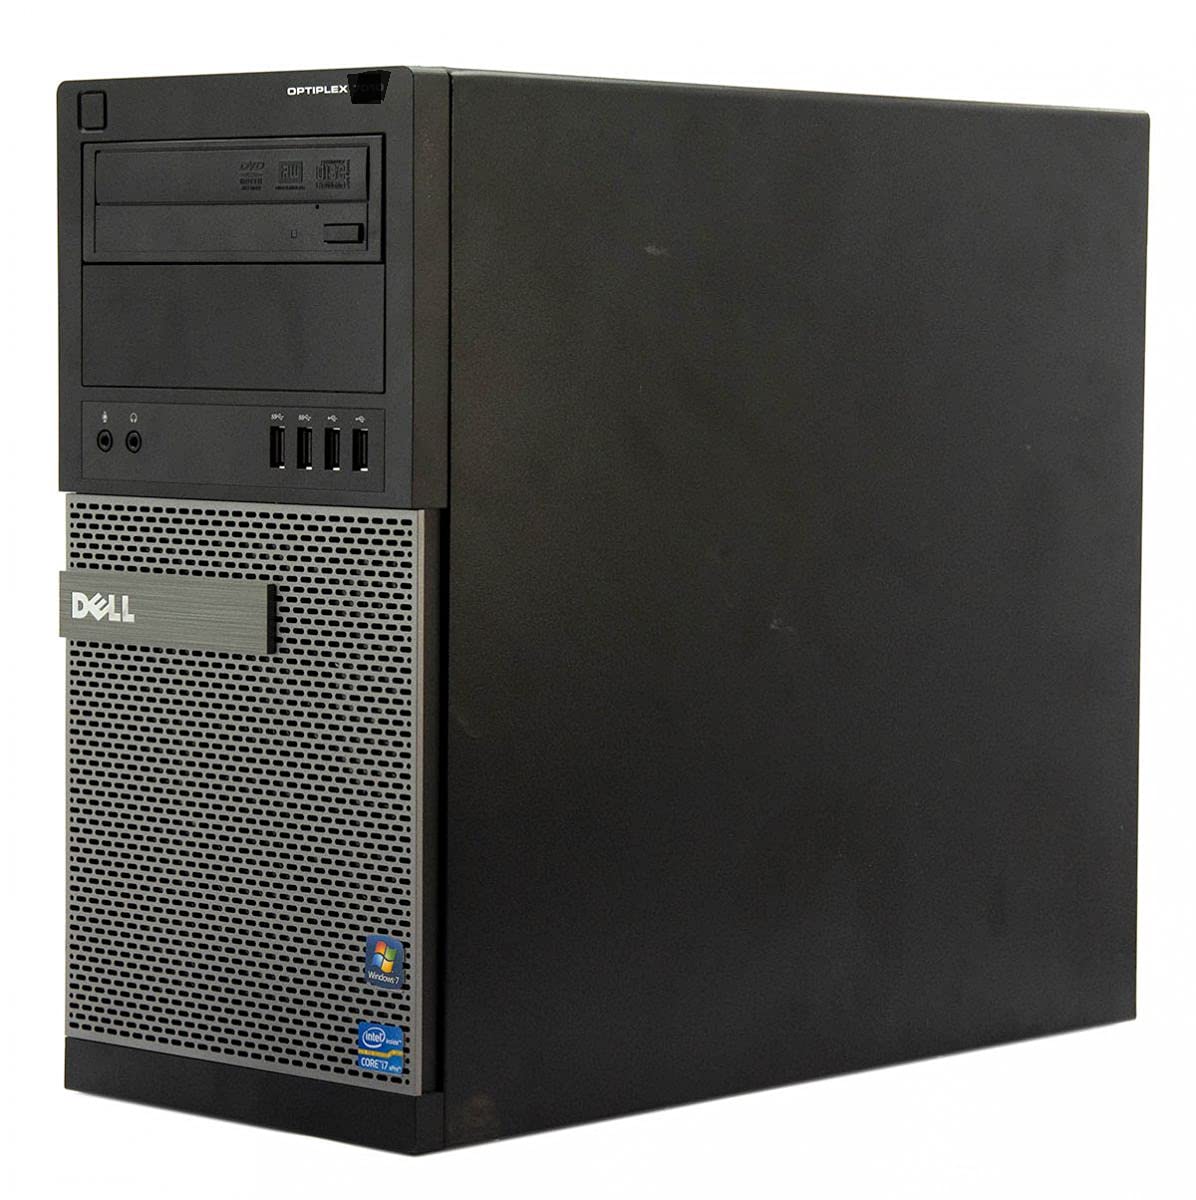 Dell OptiPlex Tower Computer Desktop PC, Intel Core i5 Processor, 8GB Ram, 128GB M.2 SSD + 1TB Hard Drive, WiFi & Bluetooth, HDMI, Nvidia GeForce GT 1030 4GB DDR4, Windows 10 (Renewed)